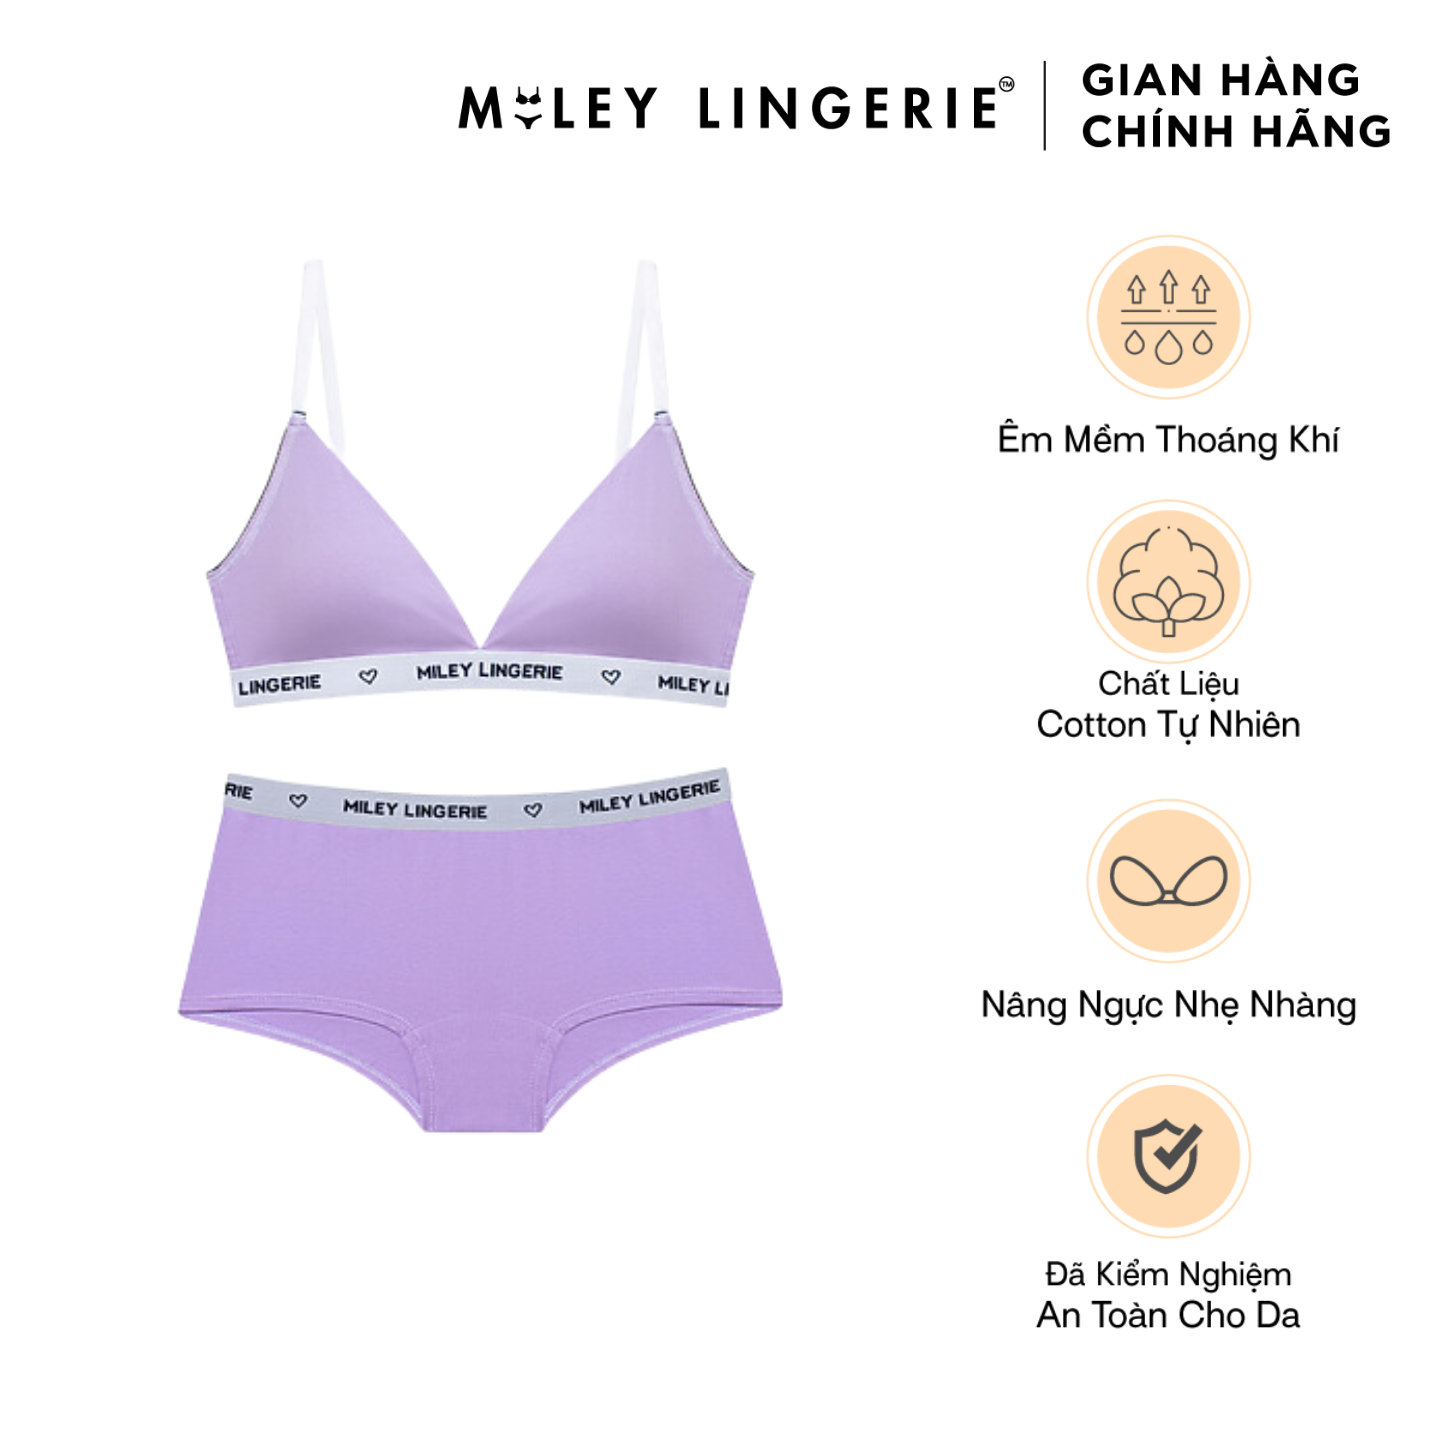 Bộ Đồ Lót Mút Mỏng Đệm Ngực Và Quần Boy Short Chất Vải Cotton Thiên Nhiên Đồng Bộ BeingMe Lilac Purple Miley Lingerie